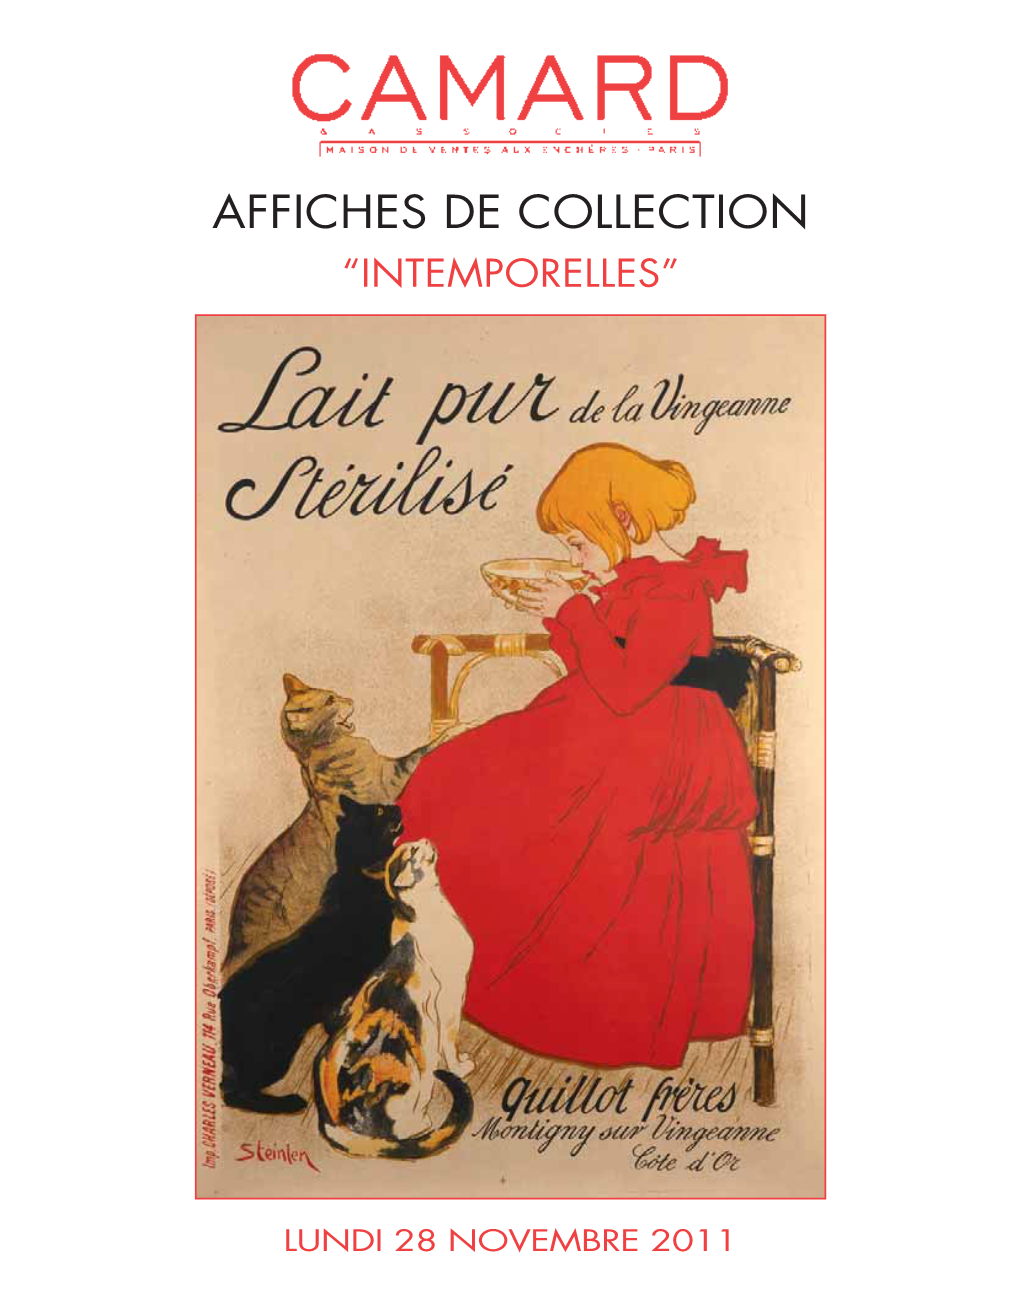 Affiches De Collection “Intemporelles”